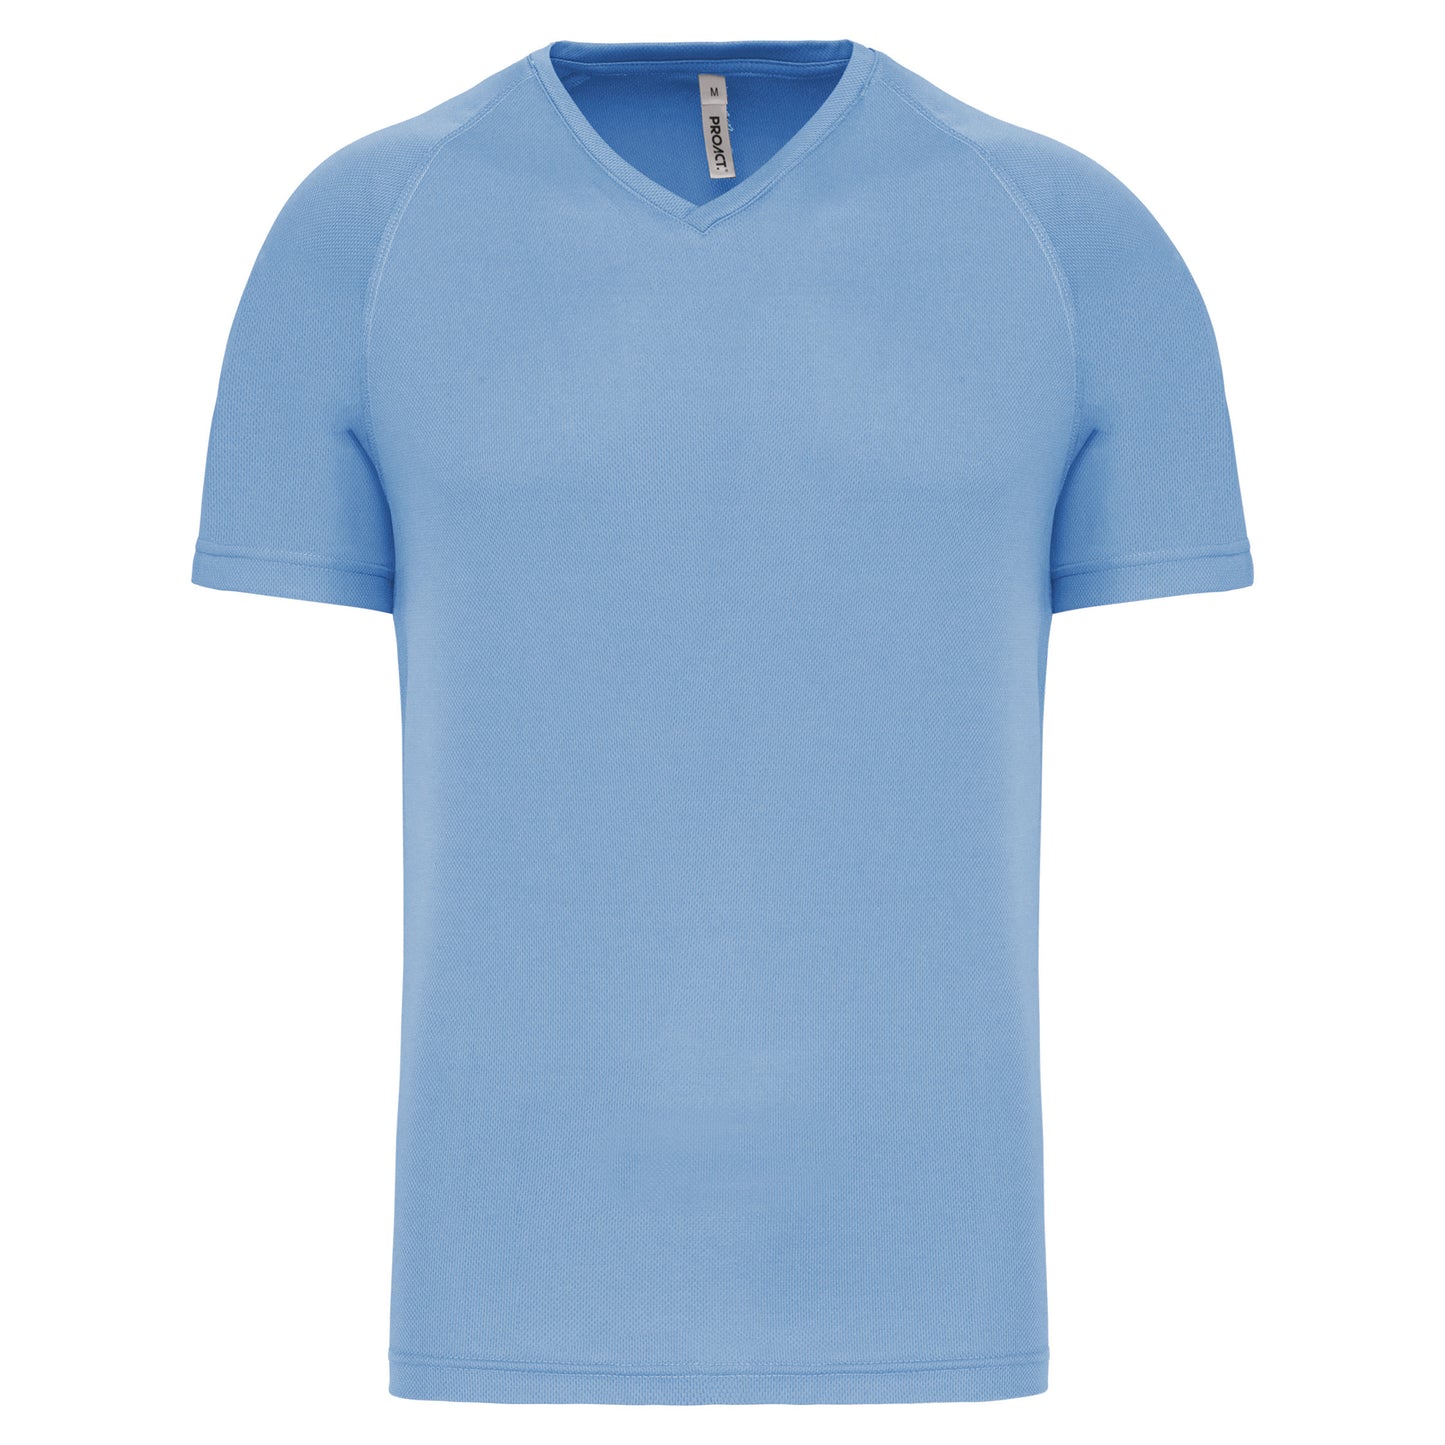 PA476 - T-shirt de sport manches courtes col v homme